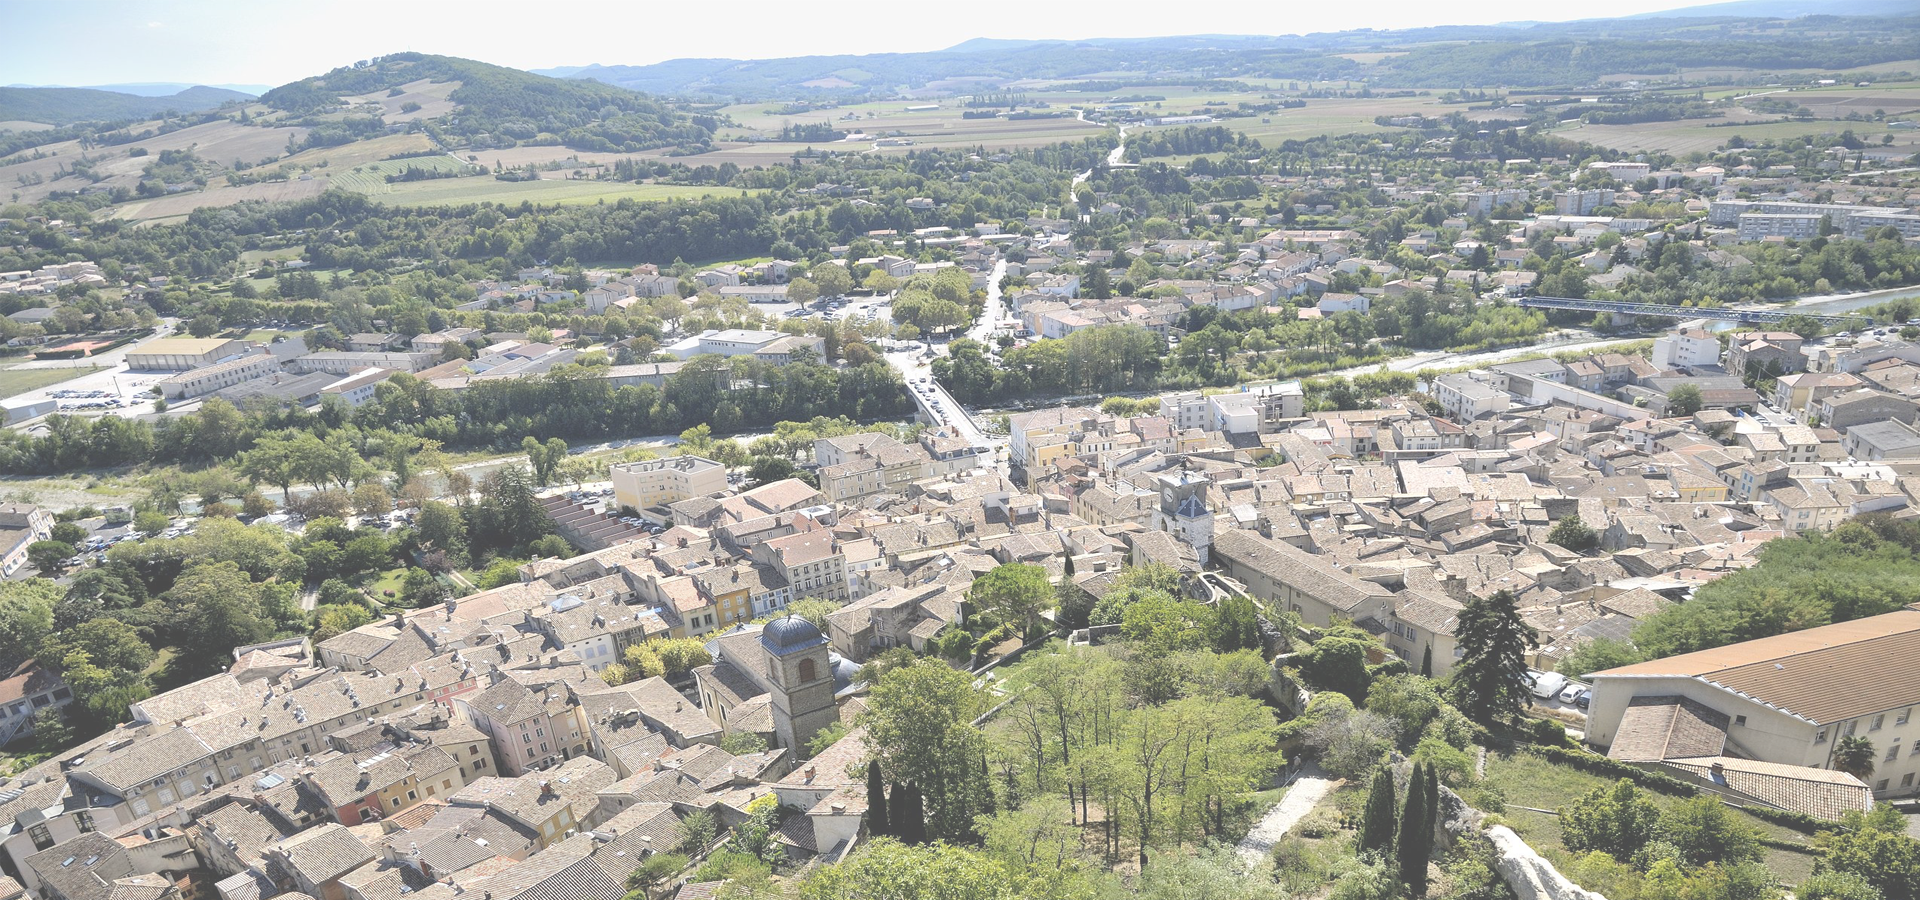 <b>Crest, Drôme Département, Auvergne-Rhône-Alpes, France</b>